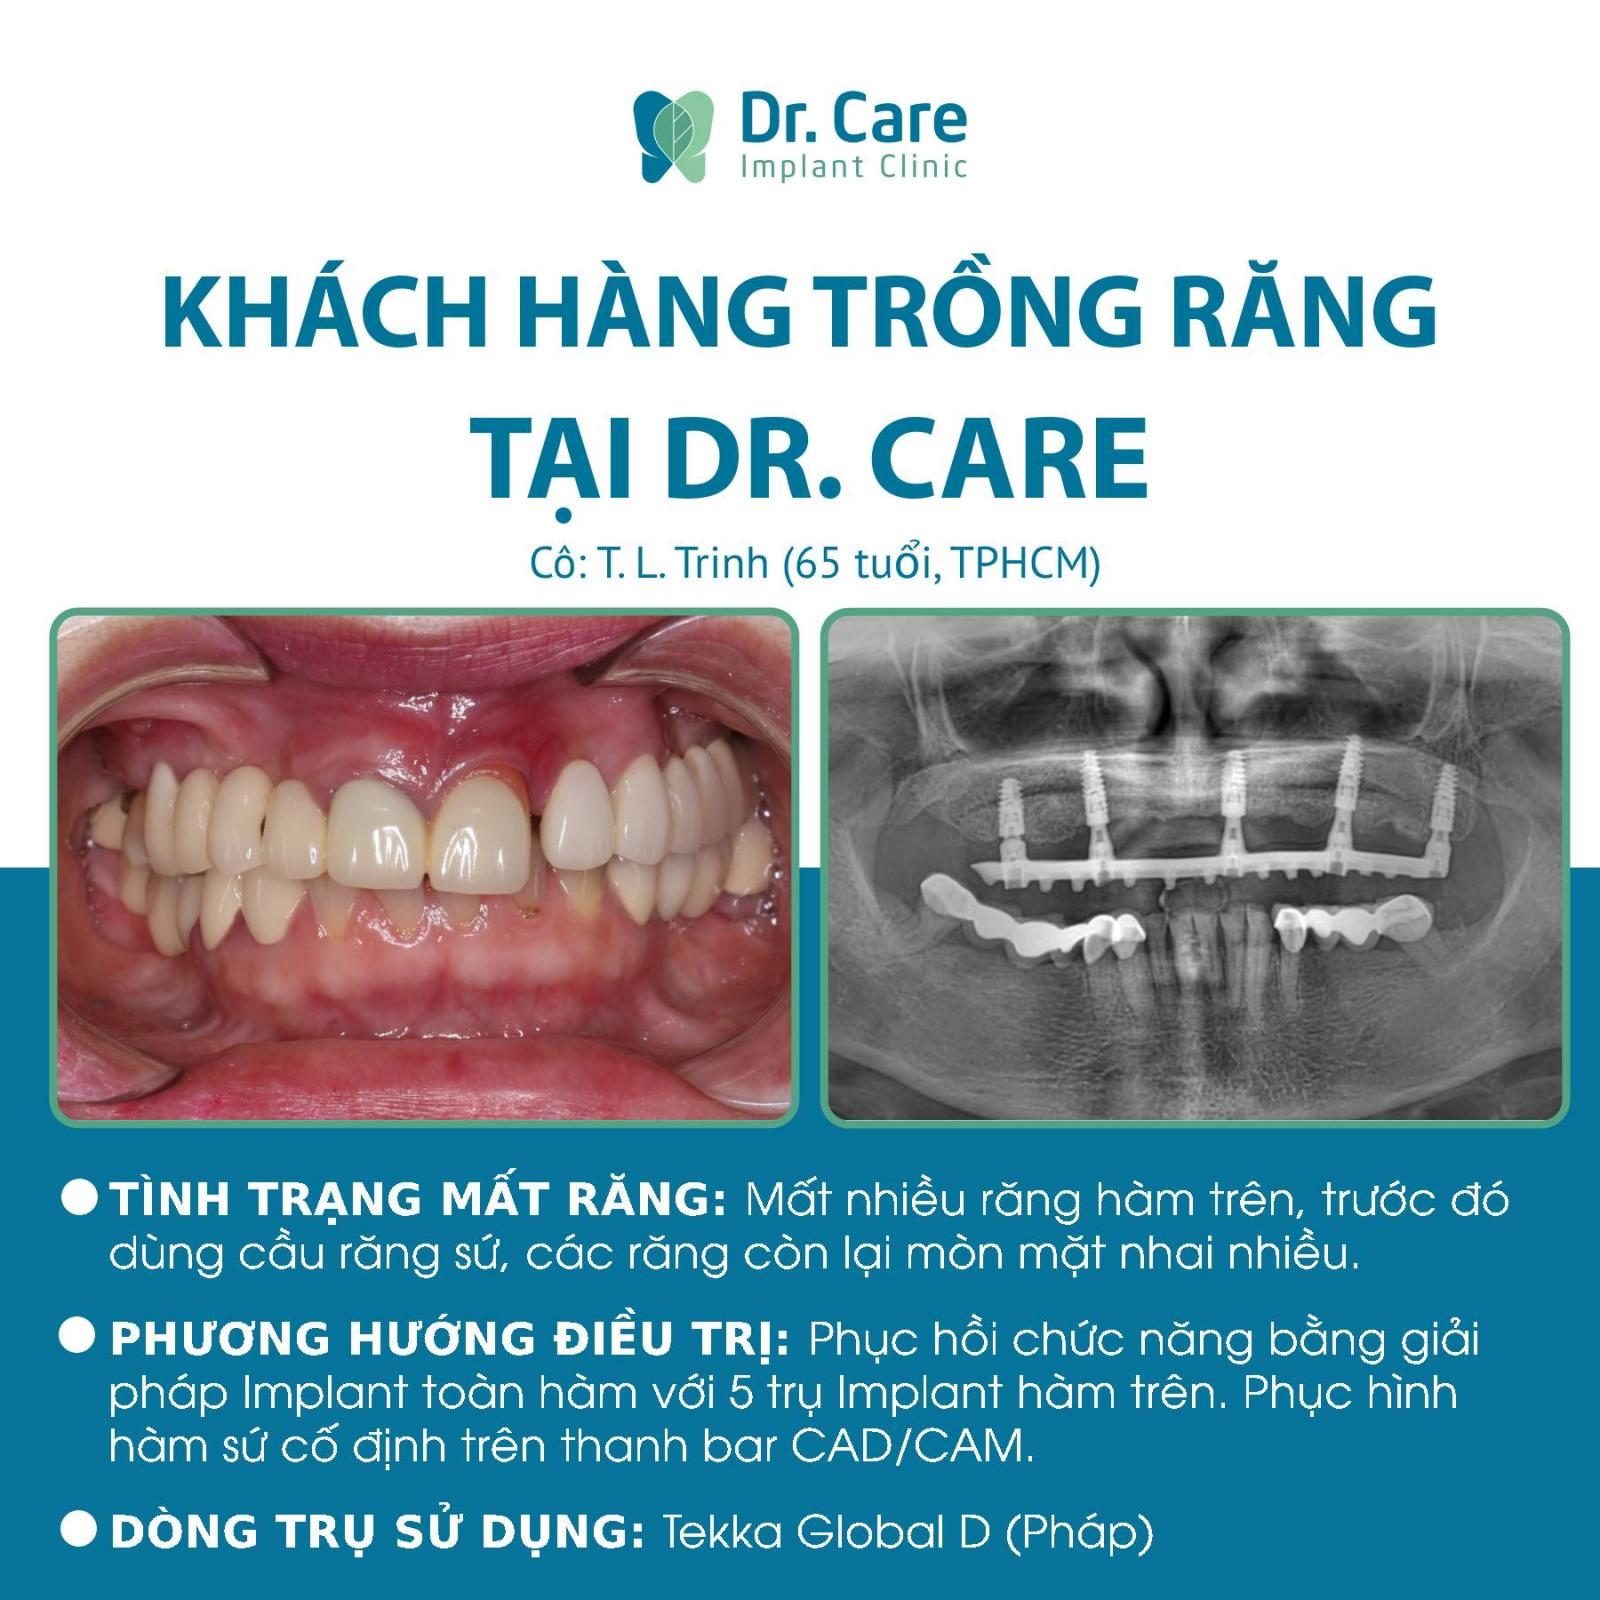 Khách hàng trồng răng nguyên hàm tại Dr.Care - Implant Clinic nói gì?